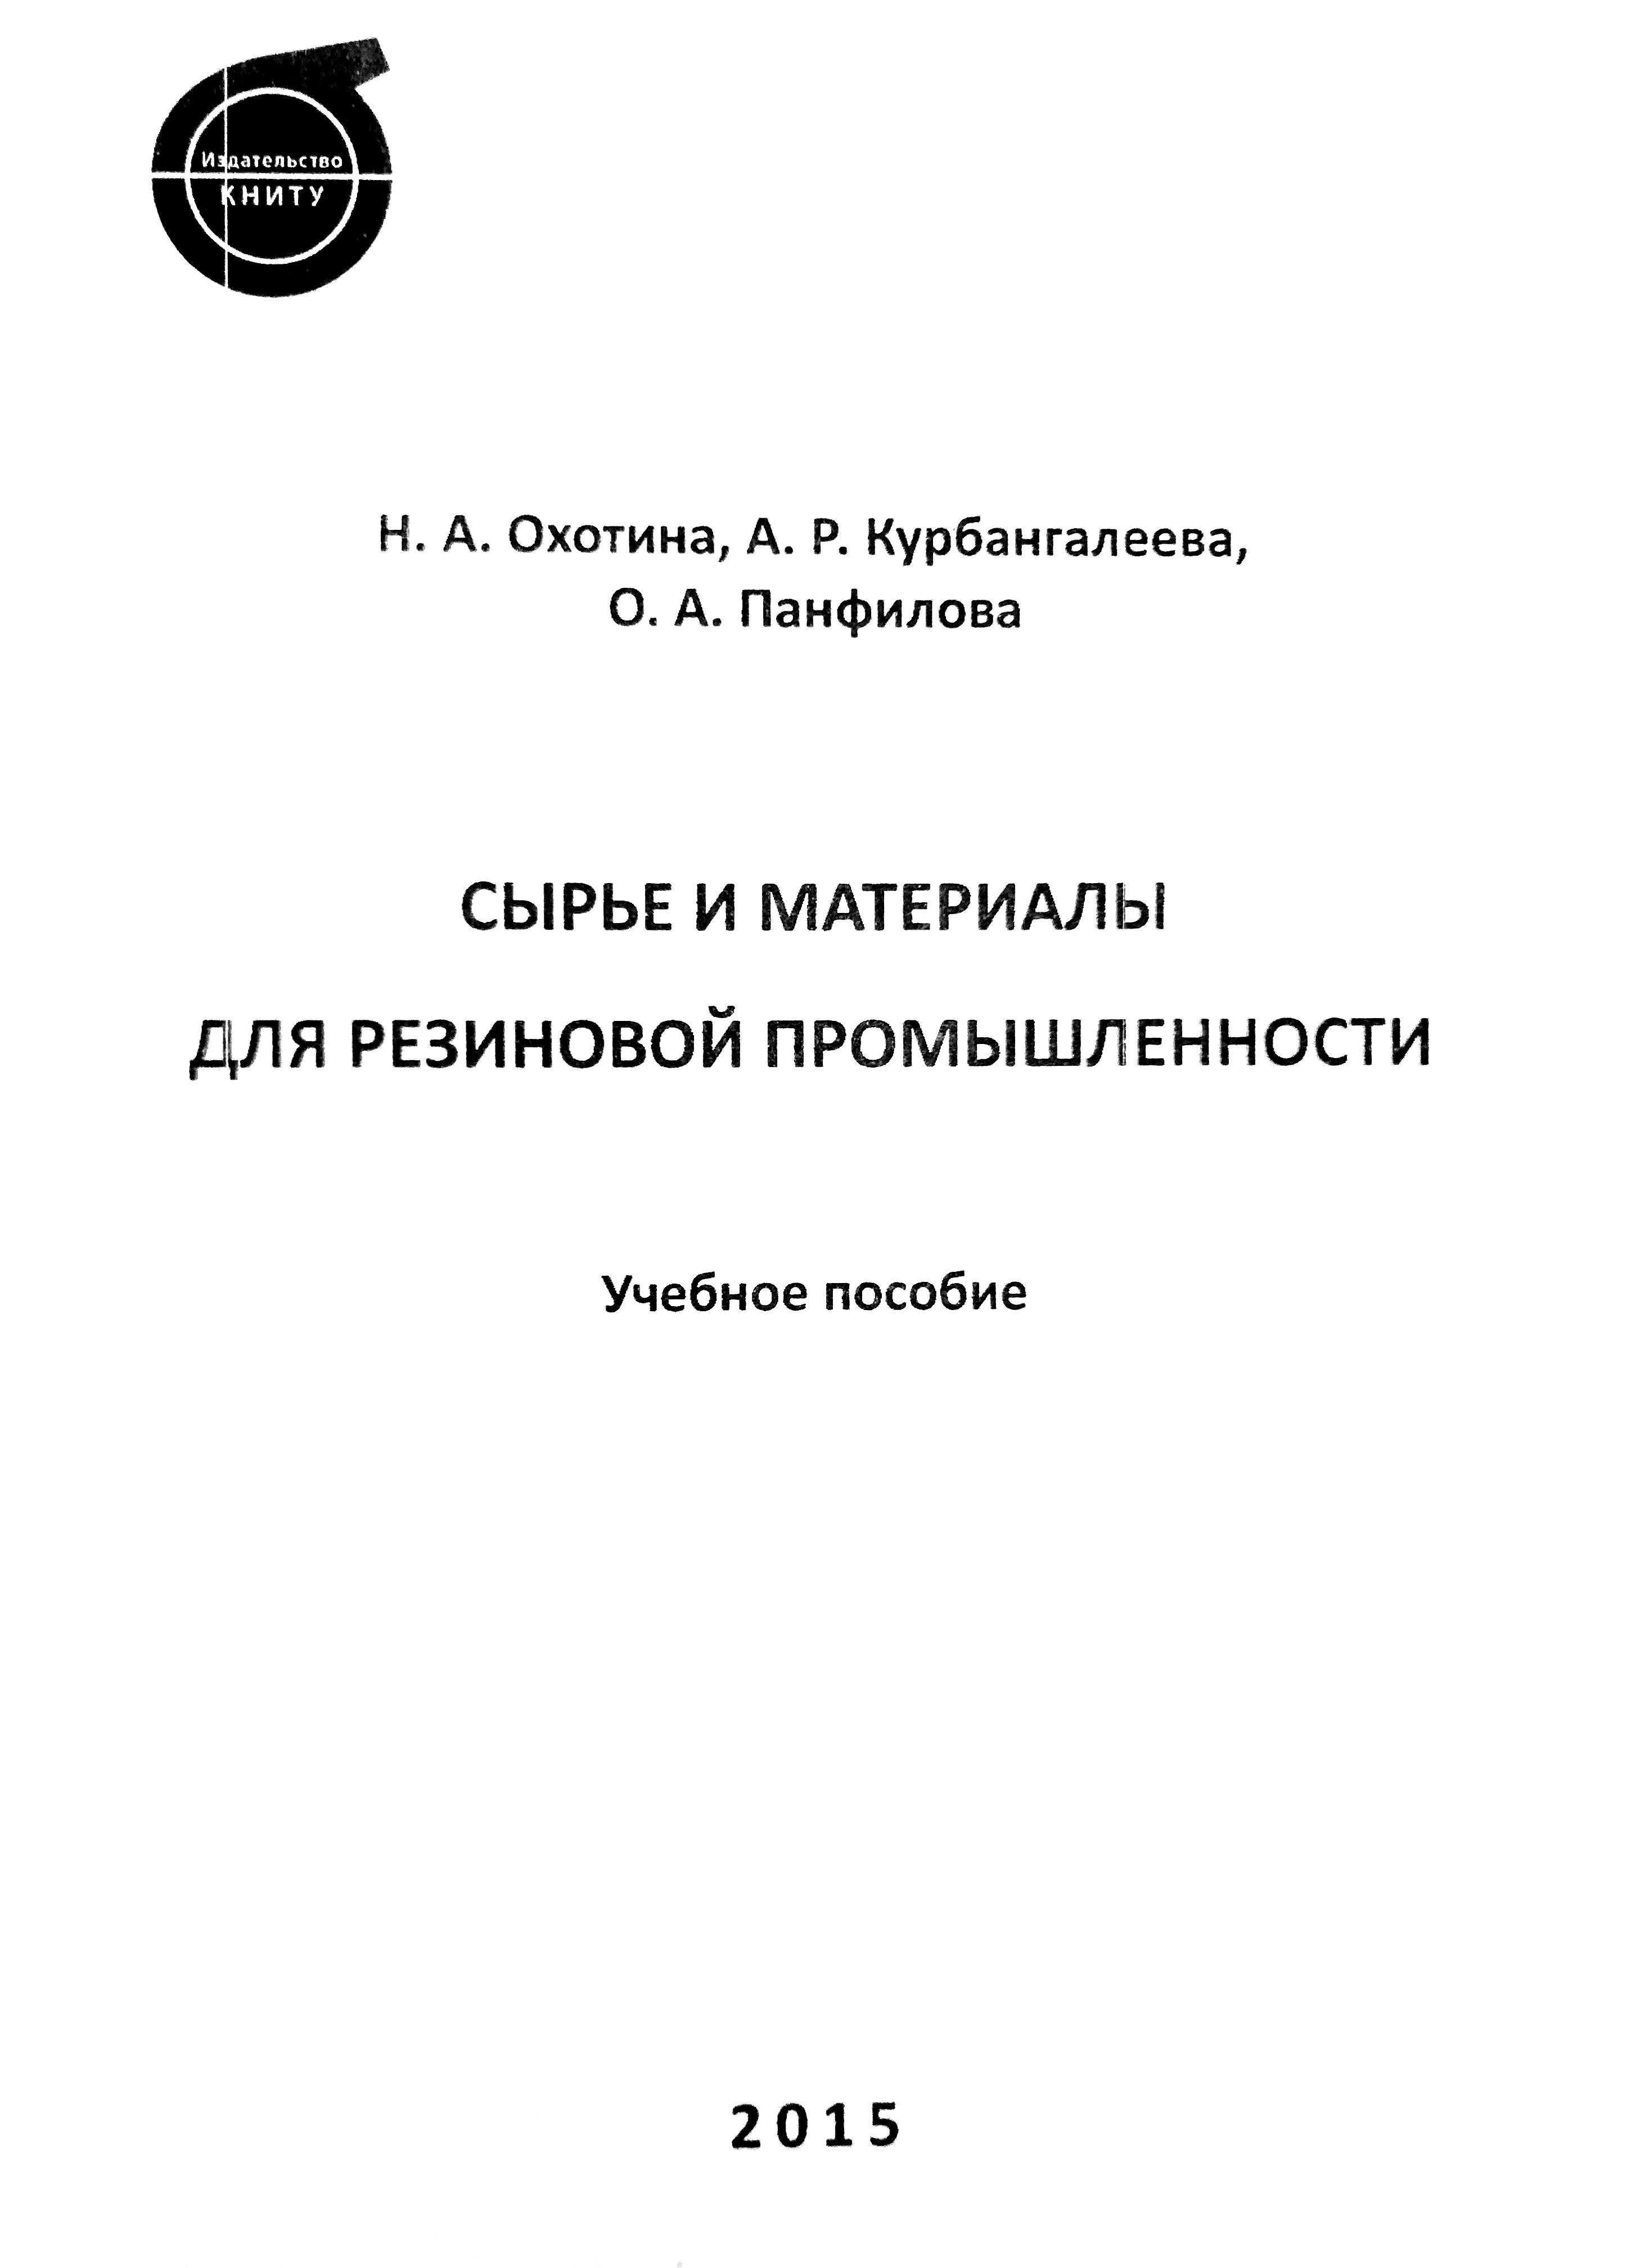 Сырье и материалы для резиновой промышленности. 2-е изд., перераб. и доп.